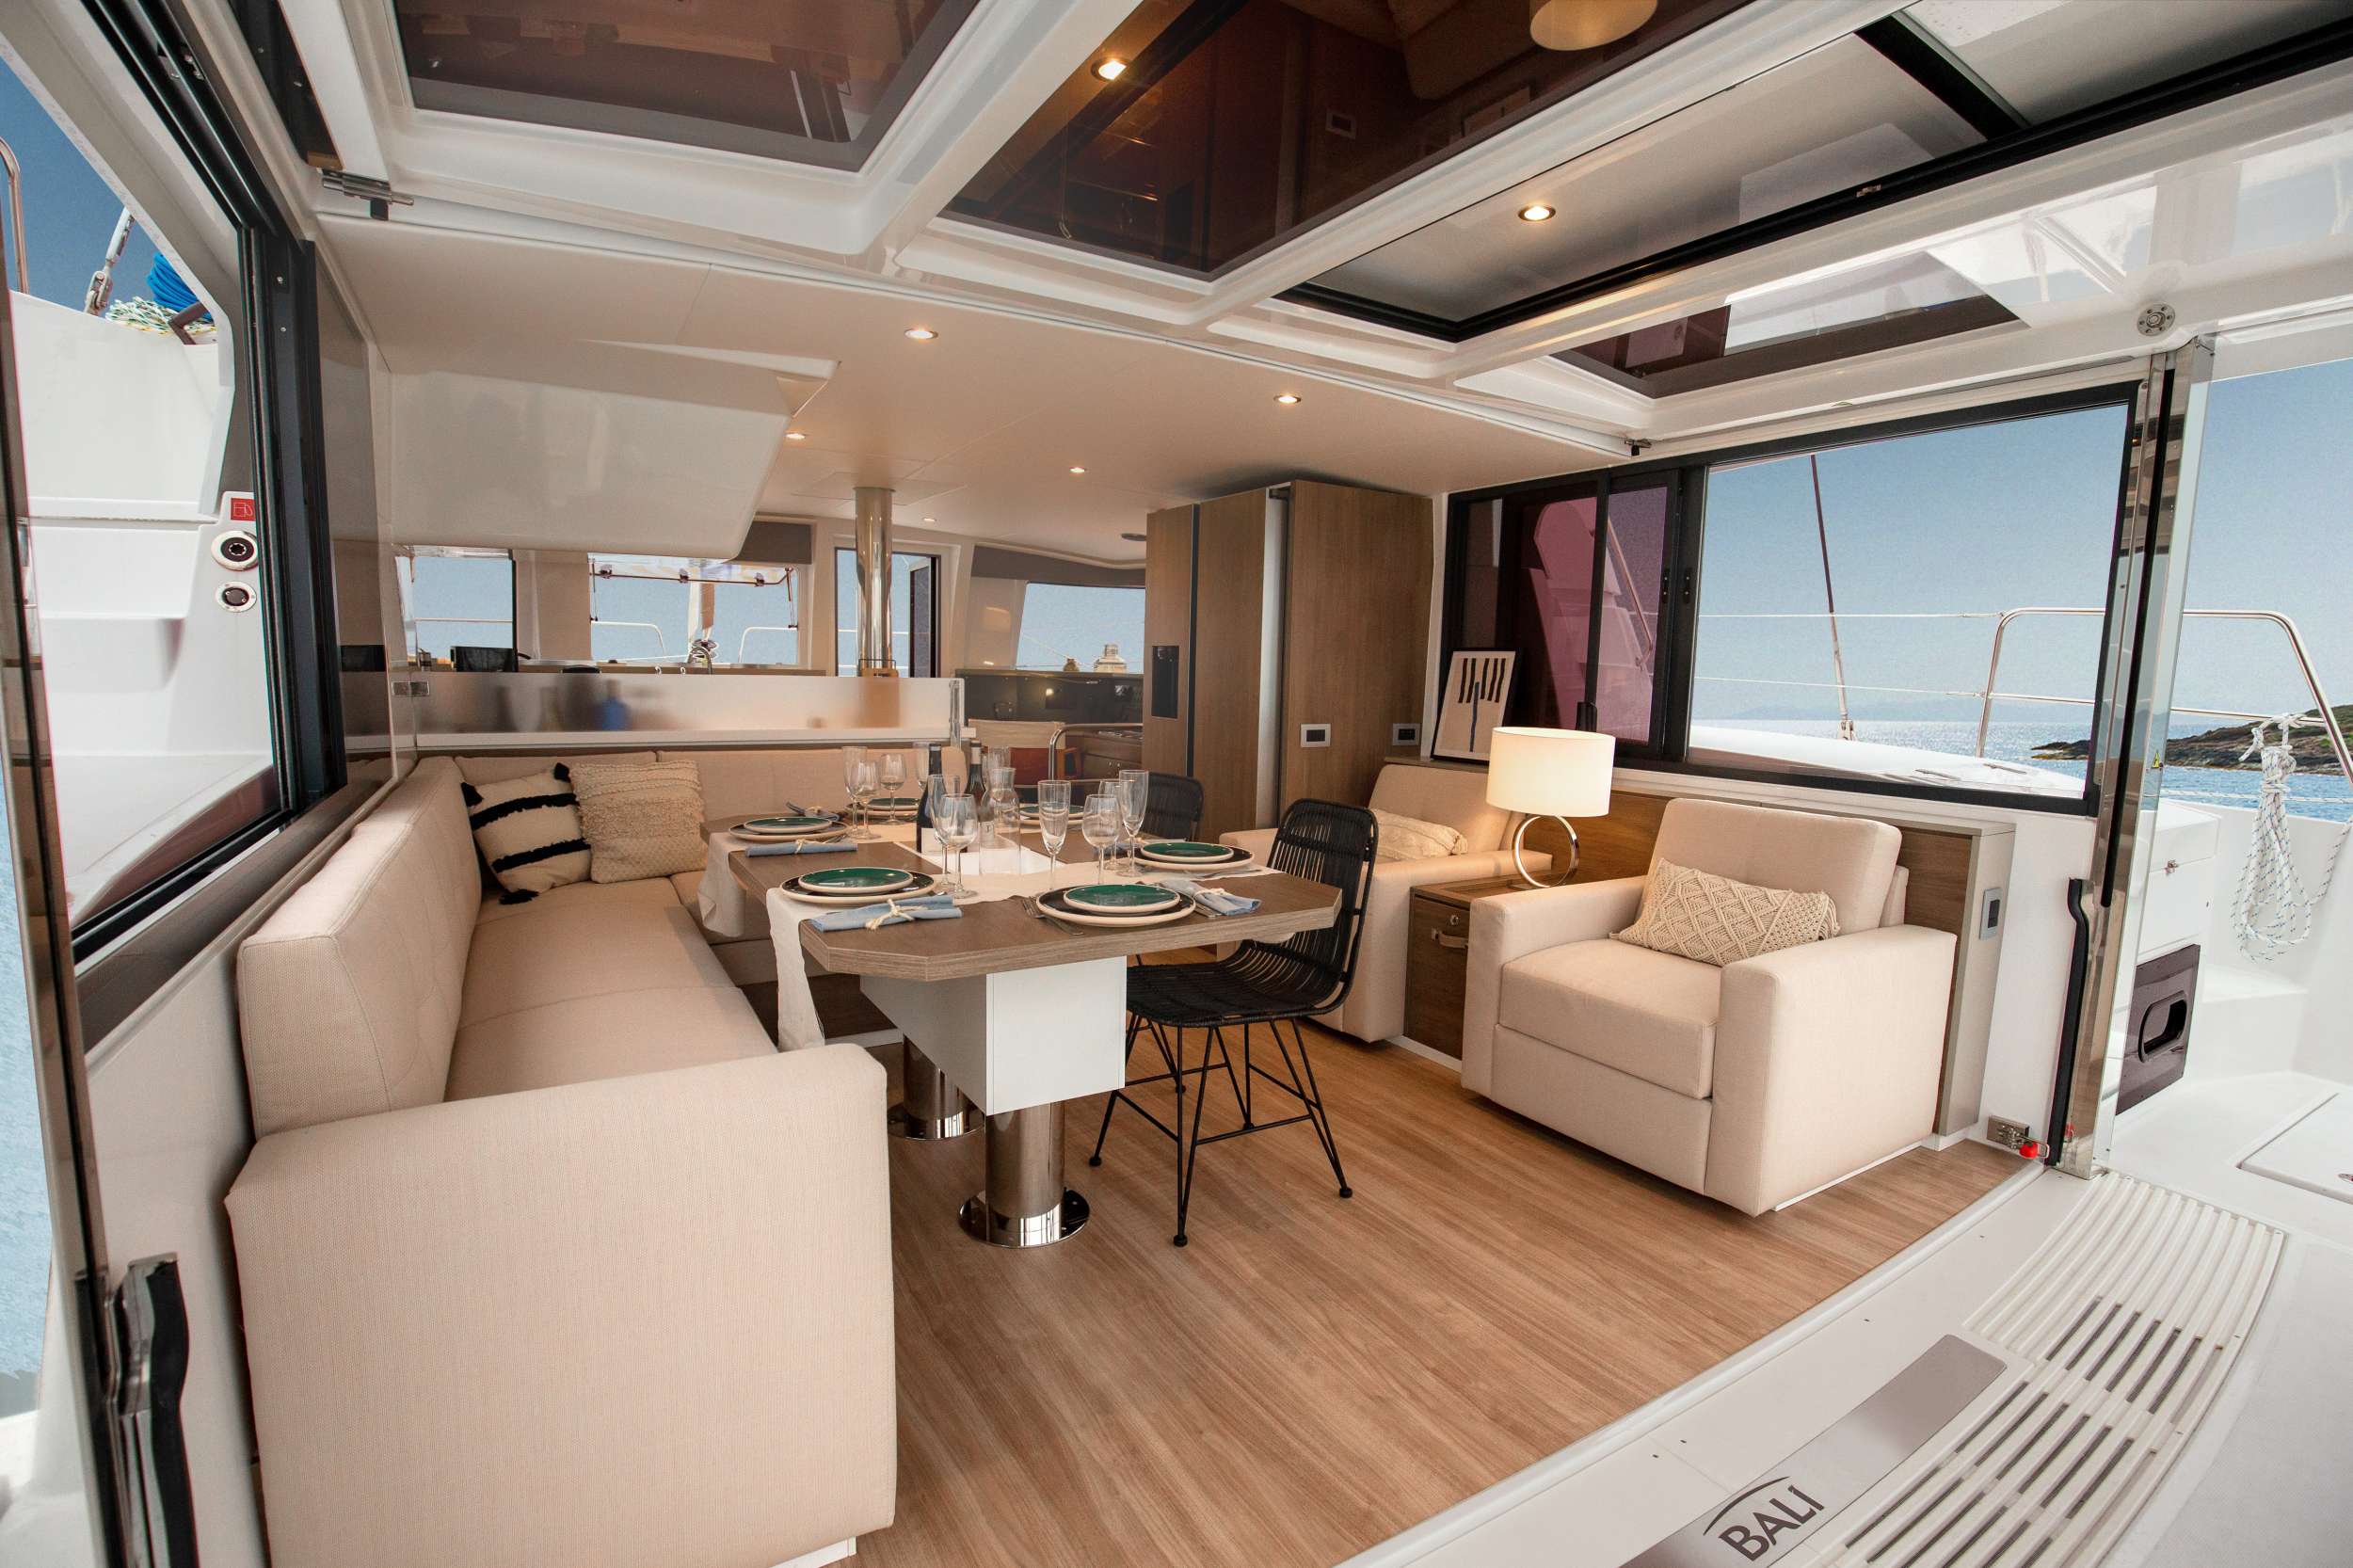 KNOWKER - Yacht Charter Alcudia & Boat hire in Balearics & Spain 2